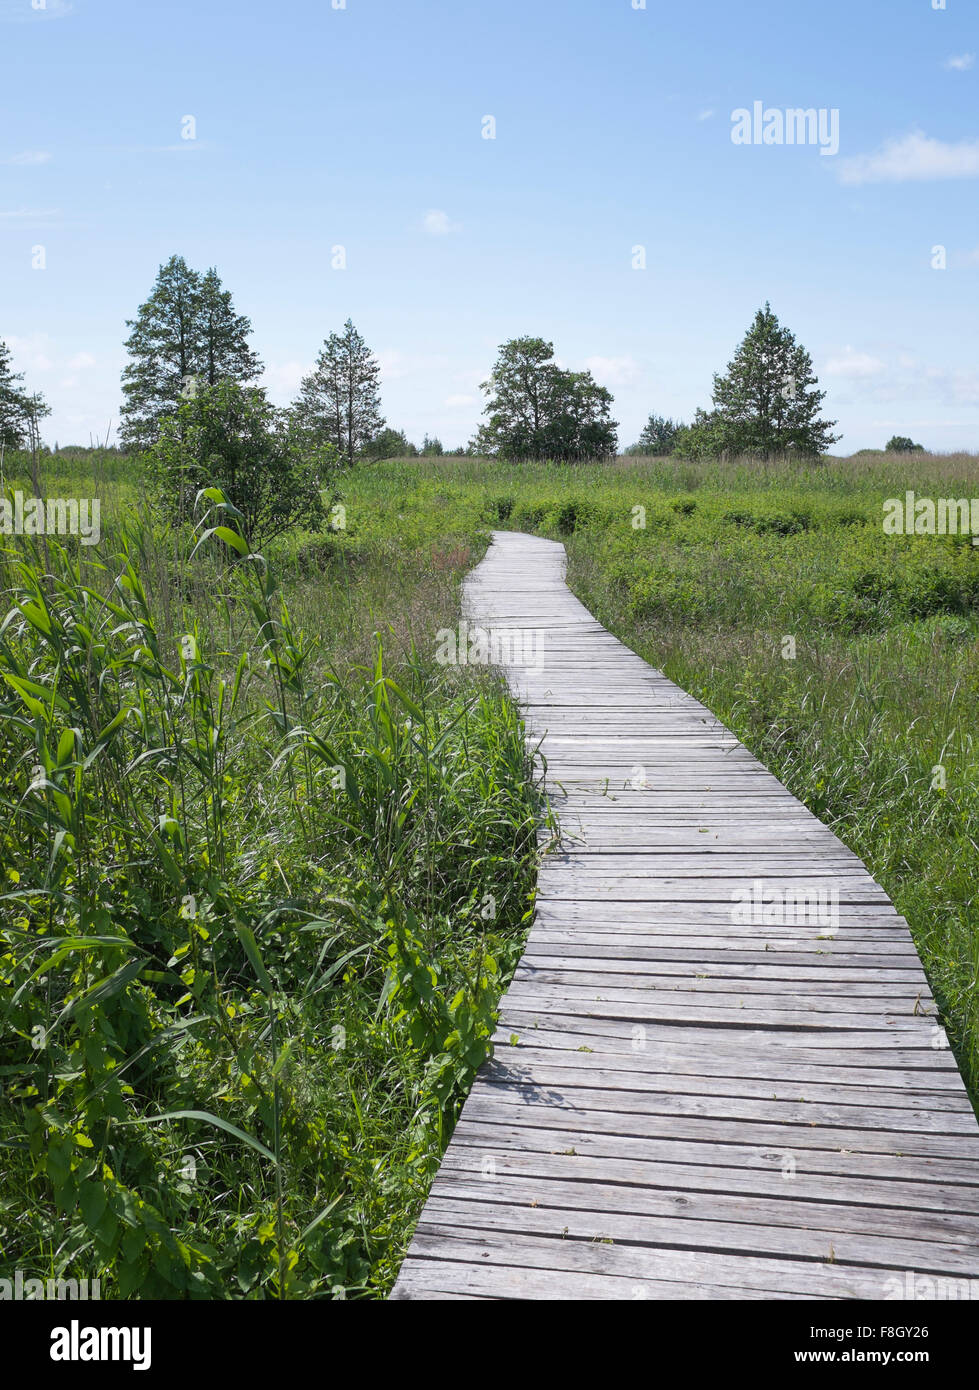 Wooden walkway in rural field Stock Photo